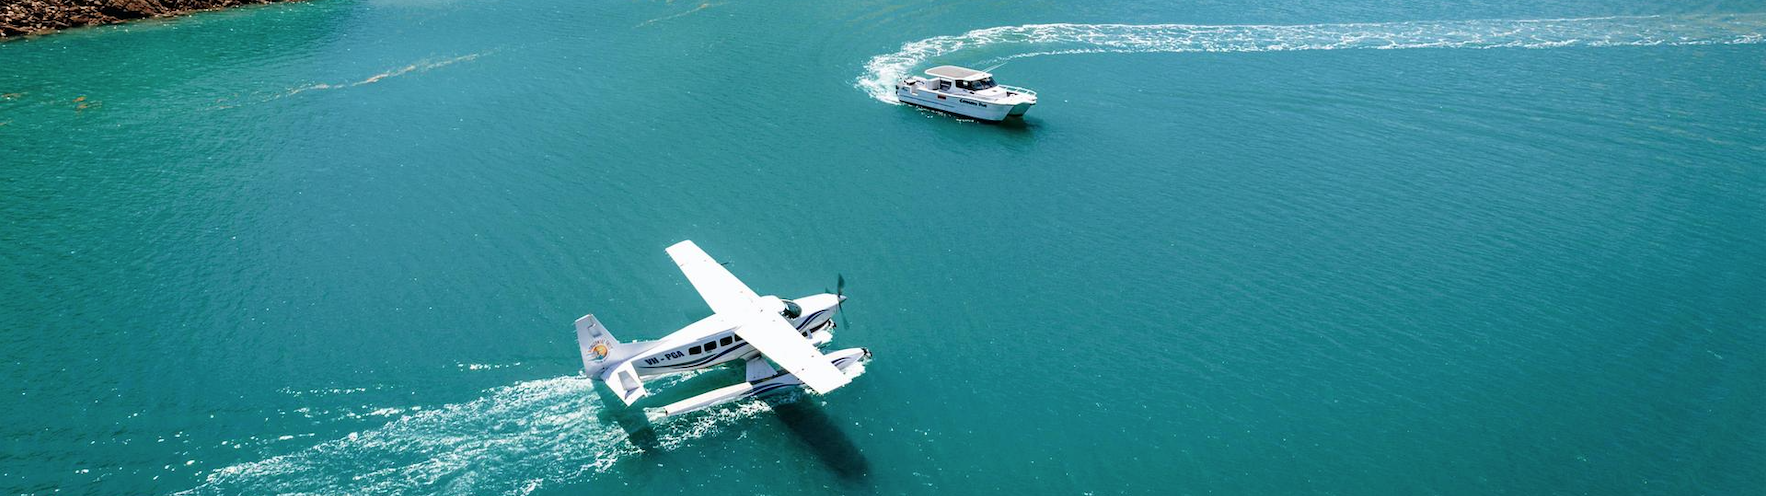 Derby Australië een vliegtuig en boot in het water